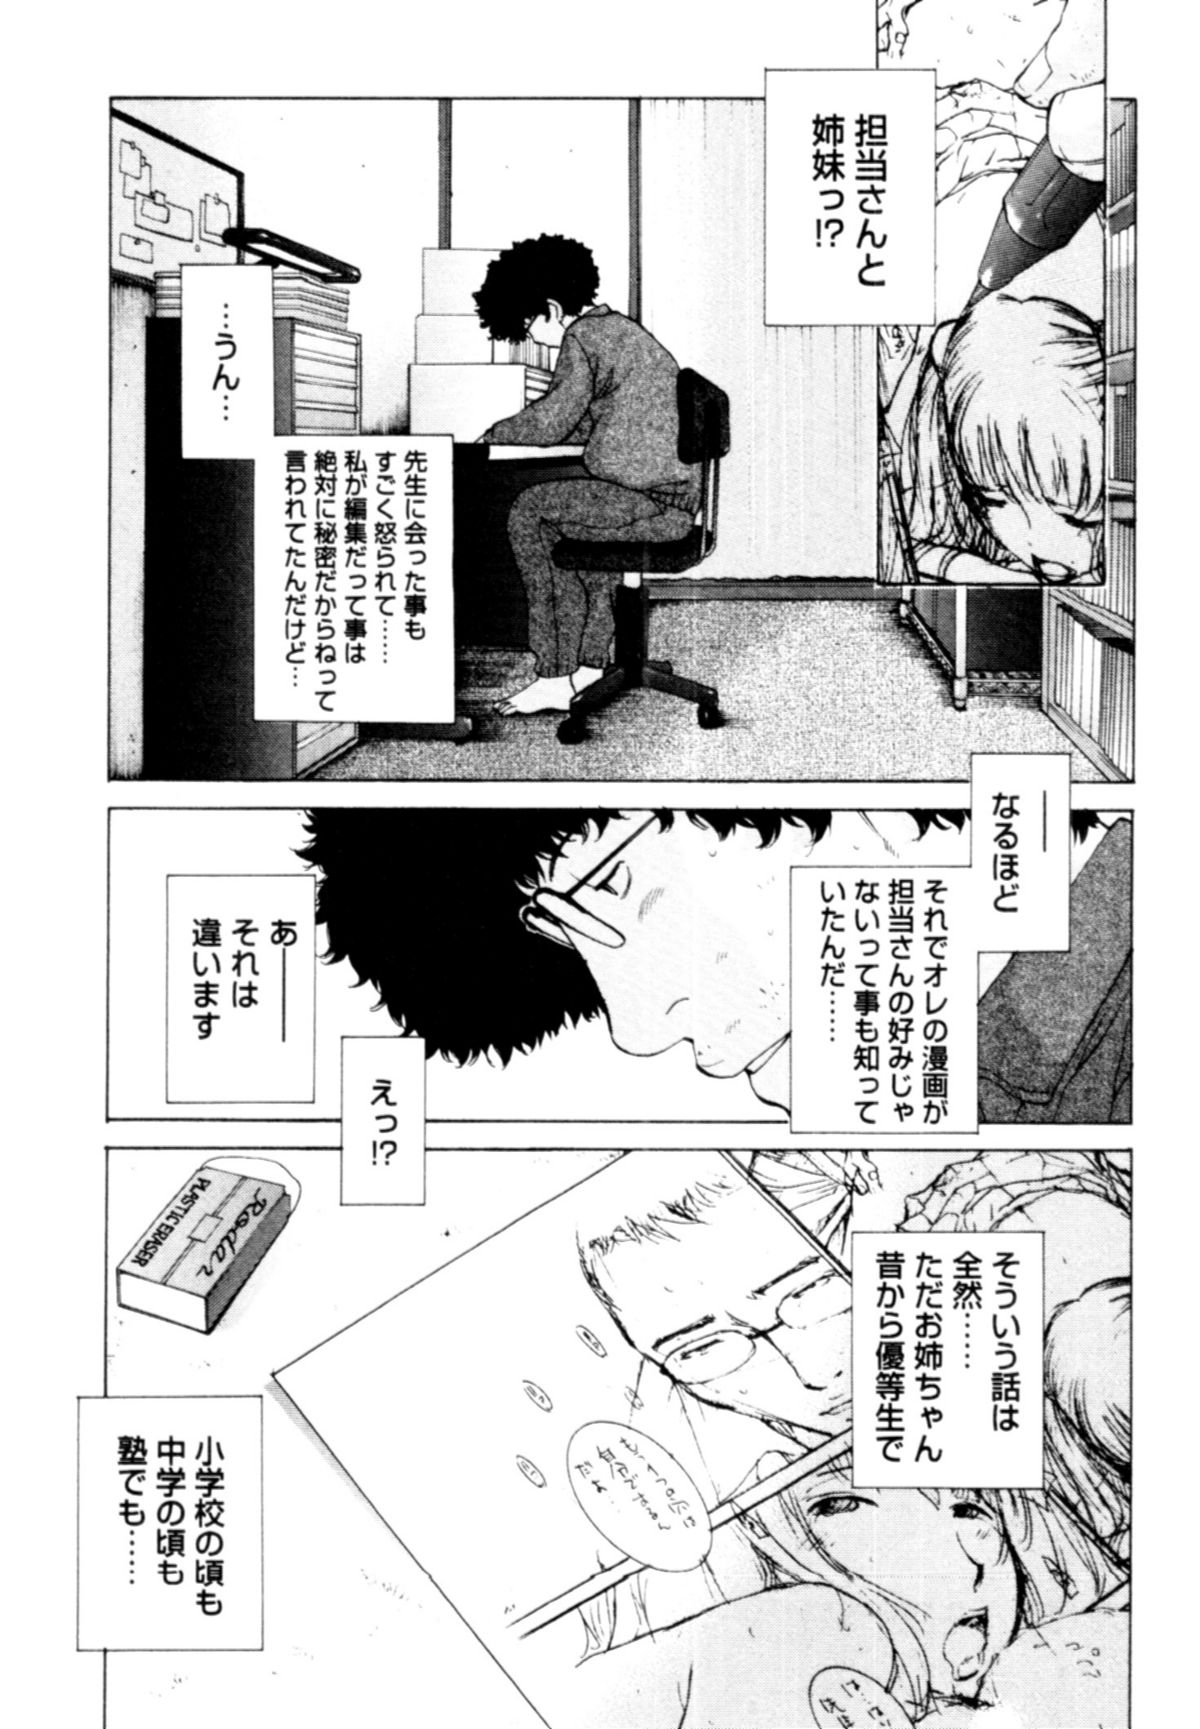 [Harazaki Takuma] Momoiro Danchi no Nichijyou [はらざきたくま] 桃色団地の日情 [10-07-10]